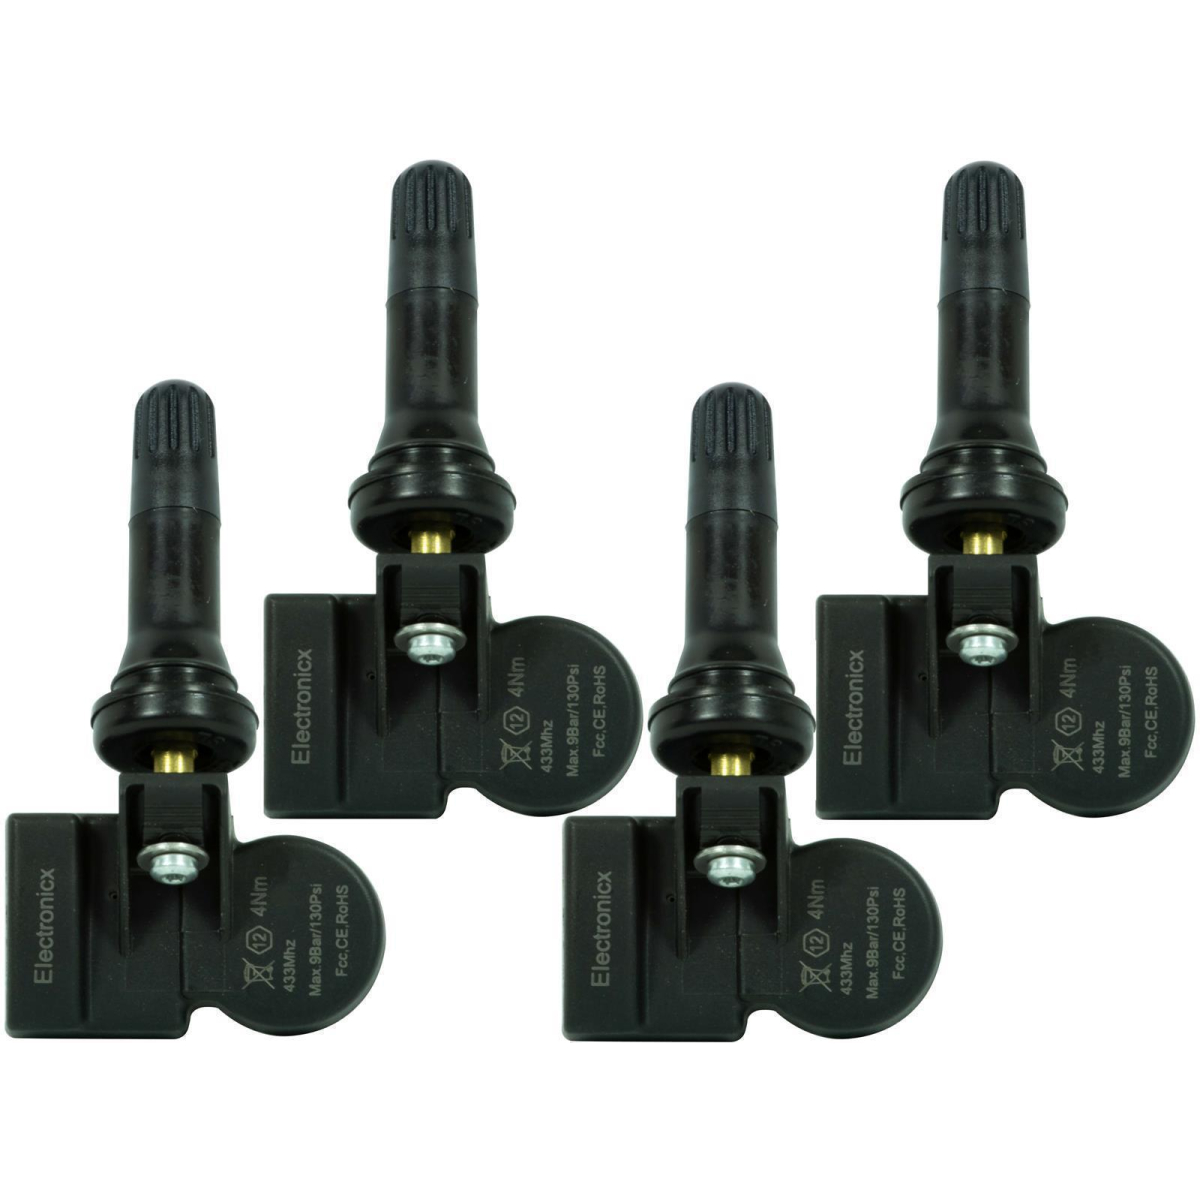 4x RDKS TPMS tire pressure sensors rubber valve for Hyundai Kia 52933-D4100